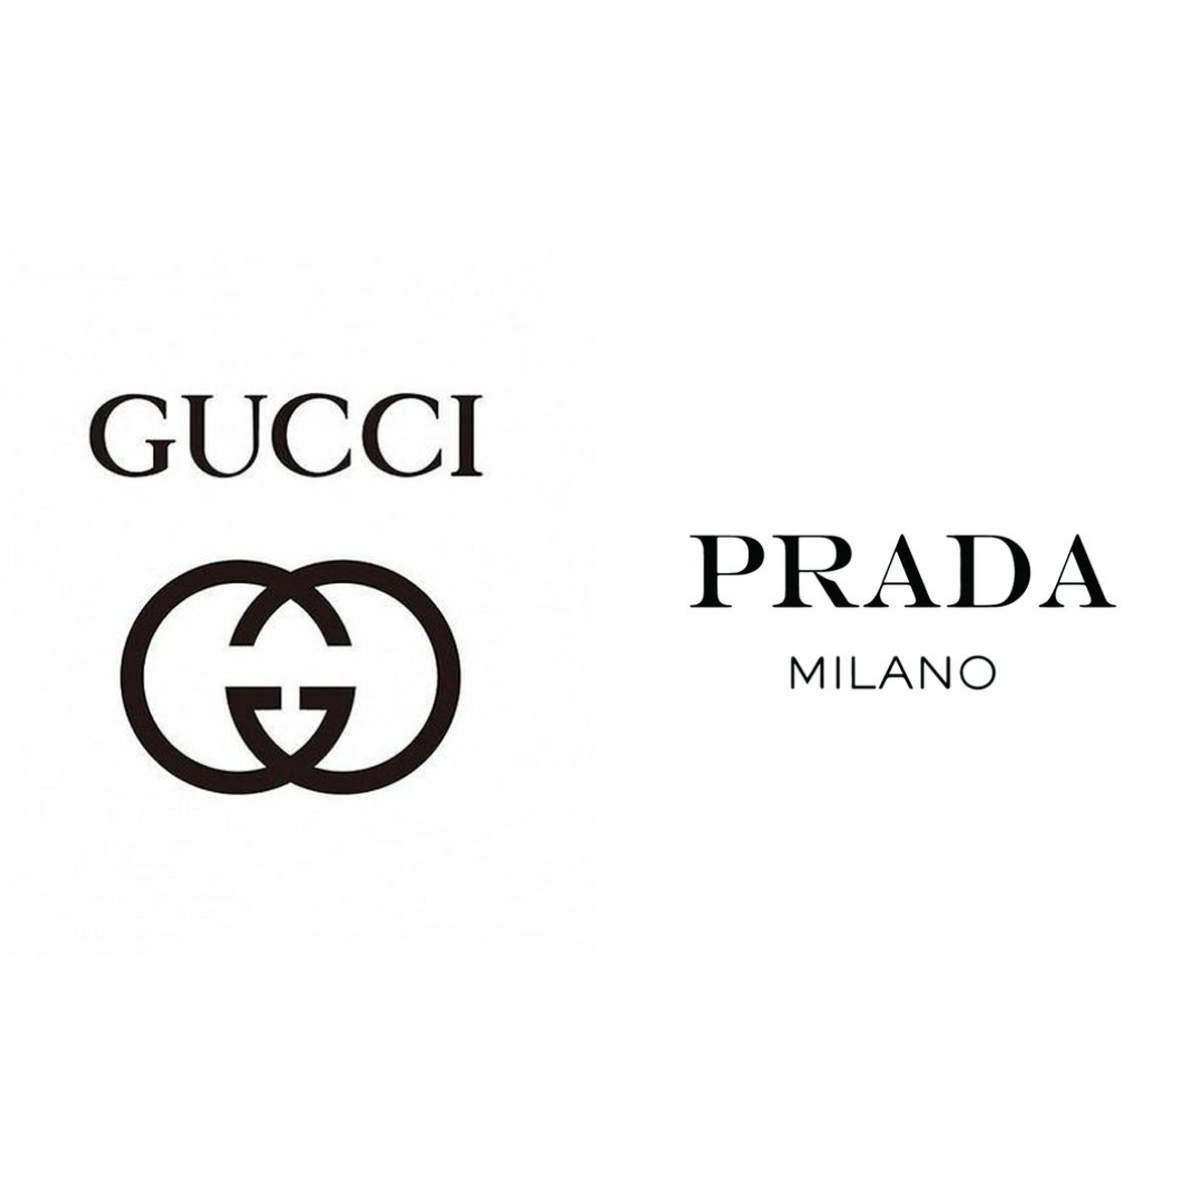 Gucci Invites Artists to Interpret Monochrome Collection